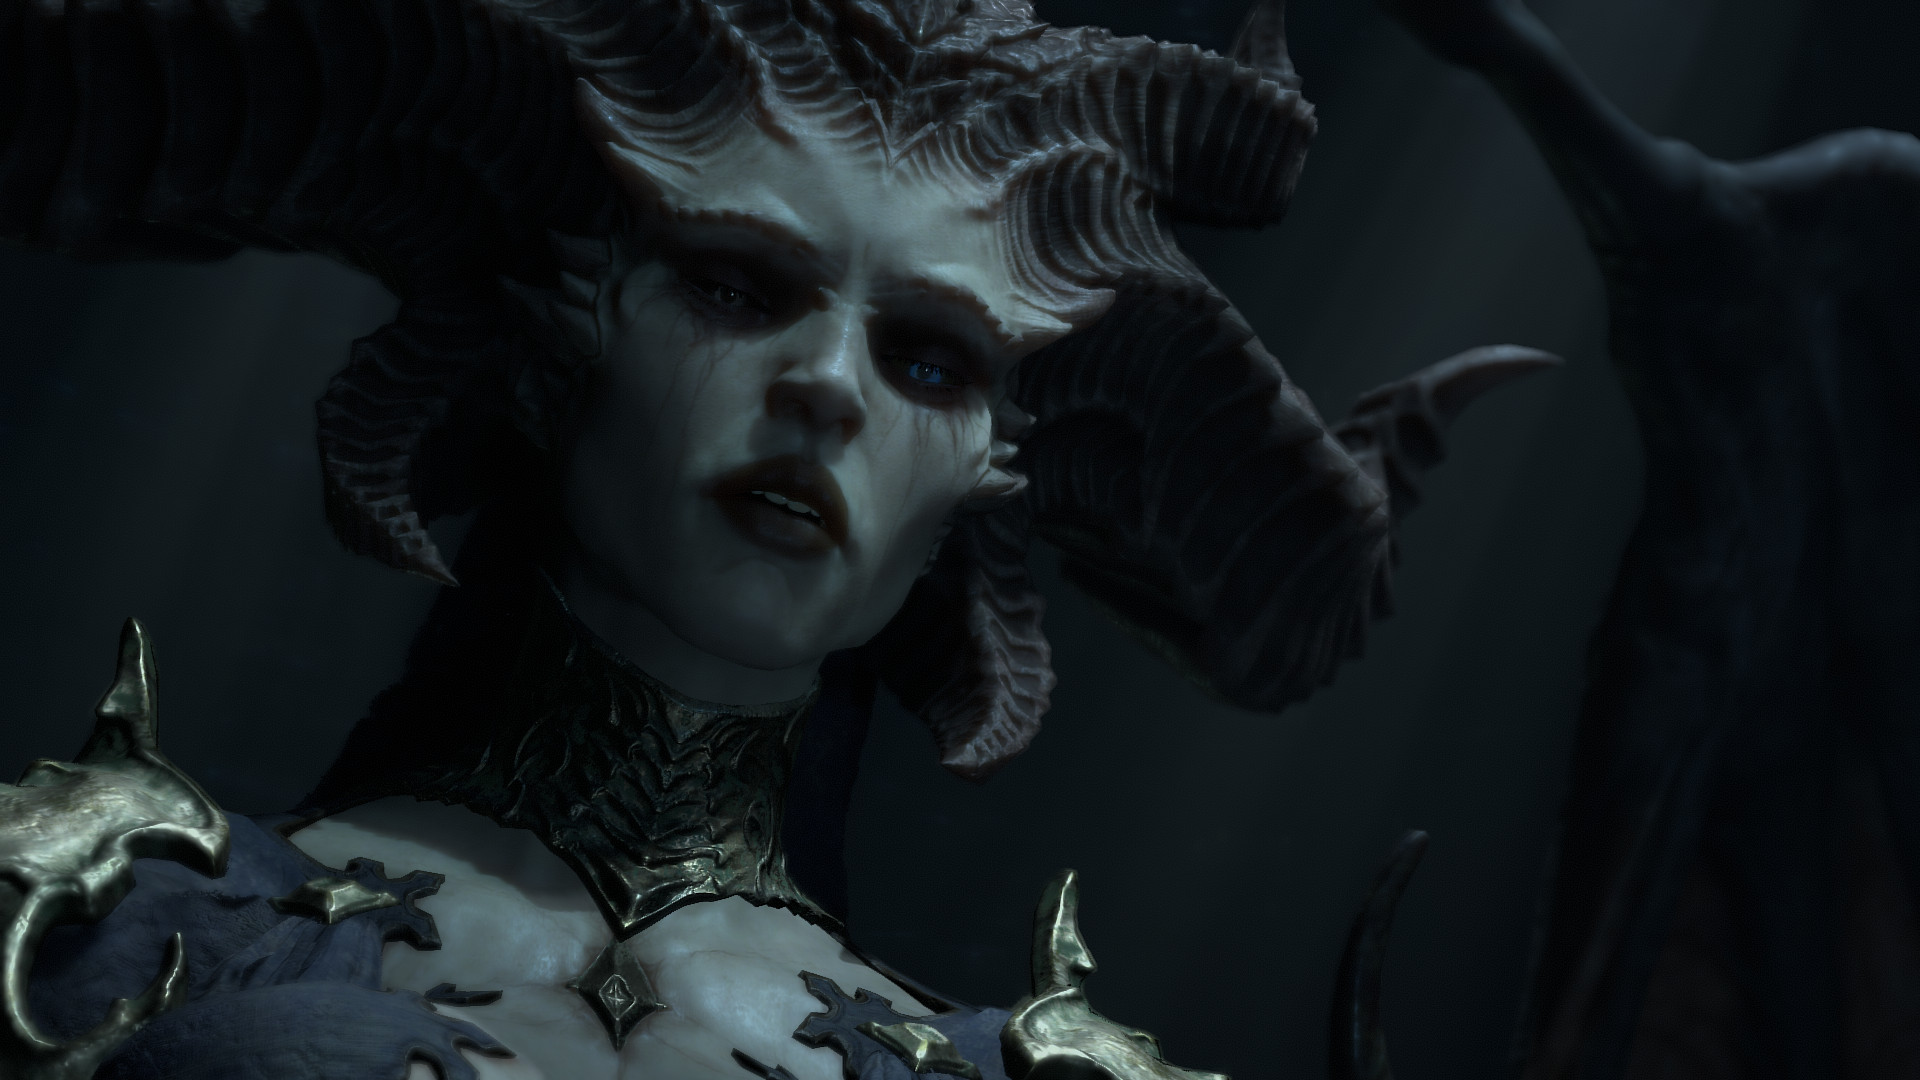 Le migliori ambientazioni di Diablo 4: Lilith osserva qualcuno dall'alto, in una stanza buia, con uno sguardo di pietà